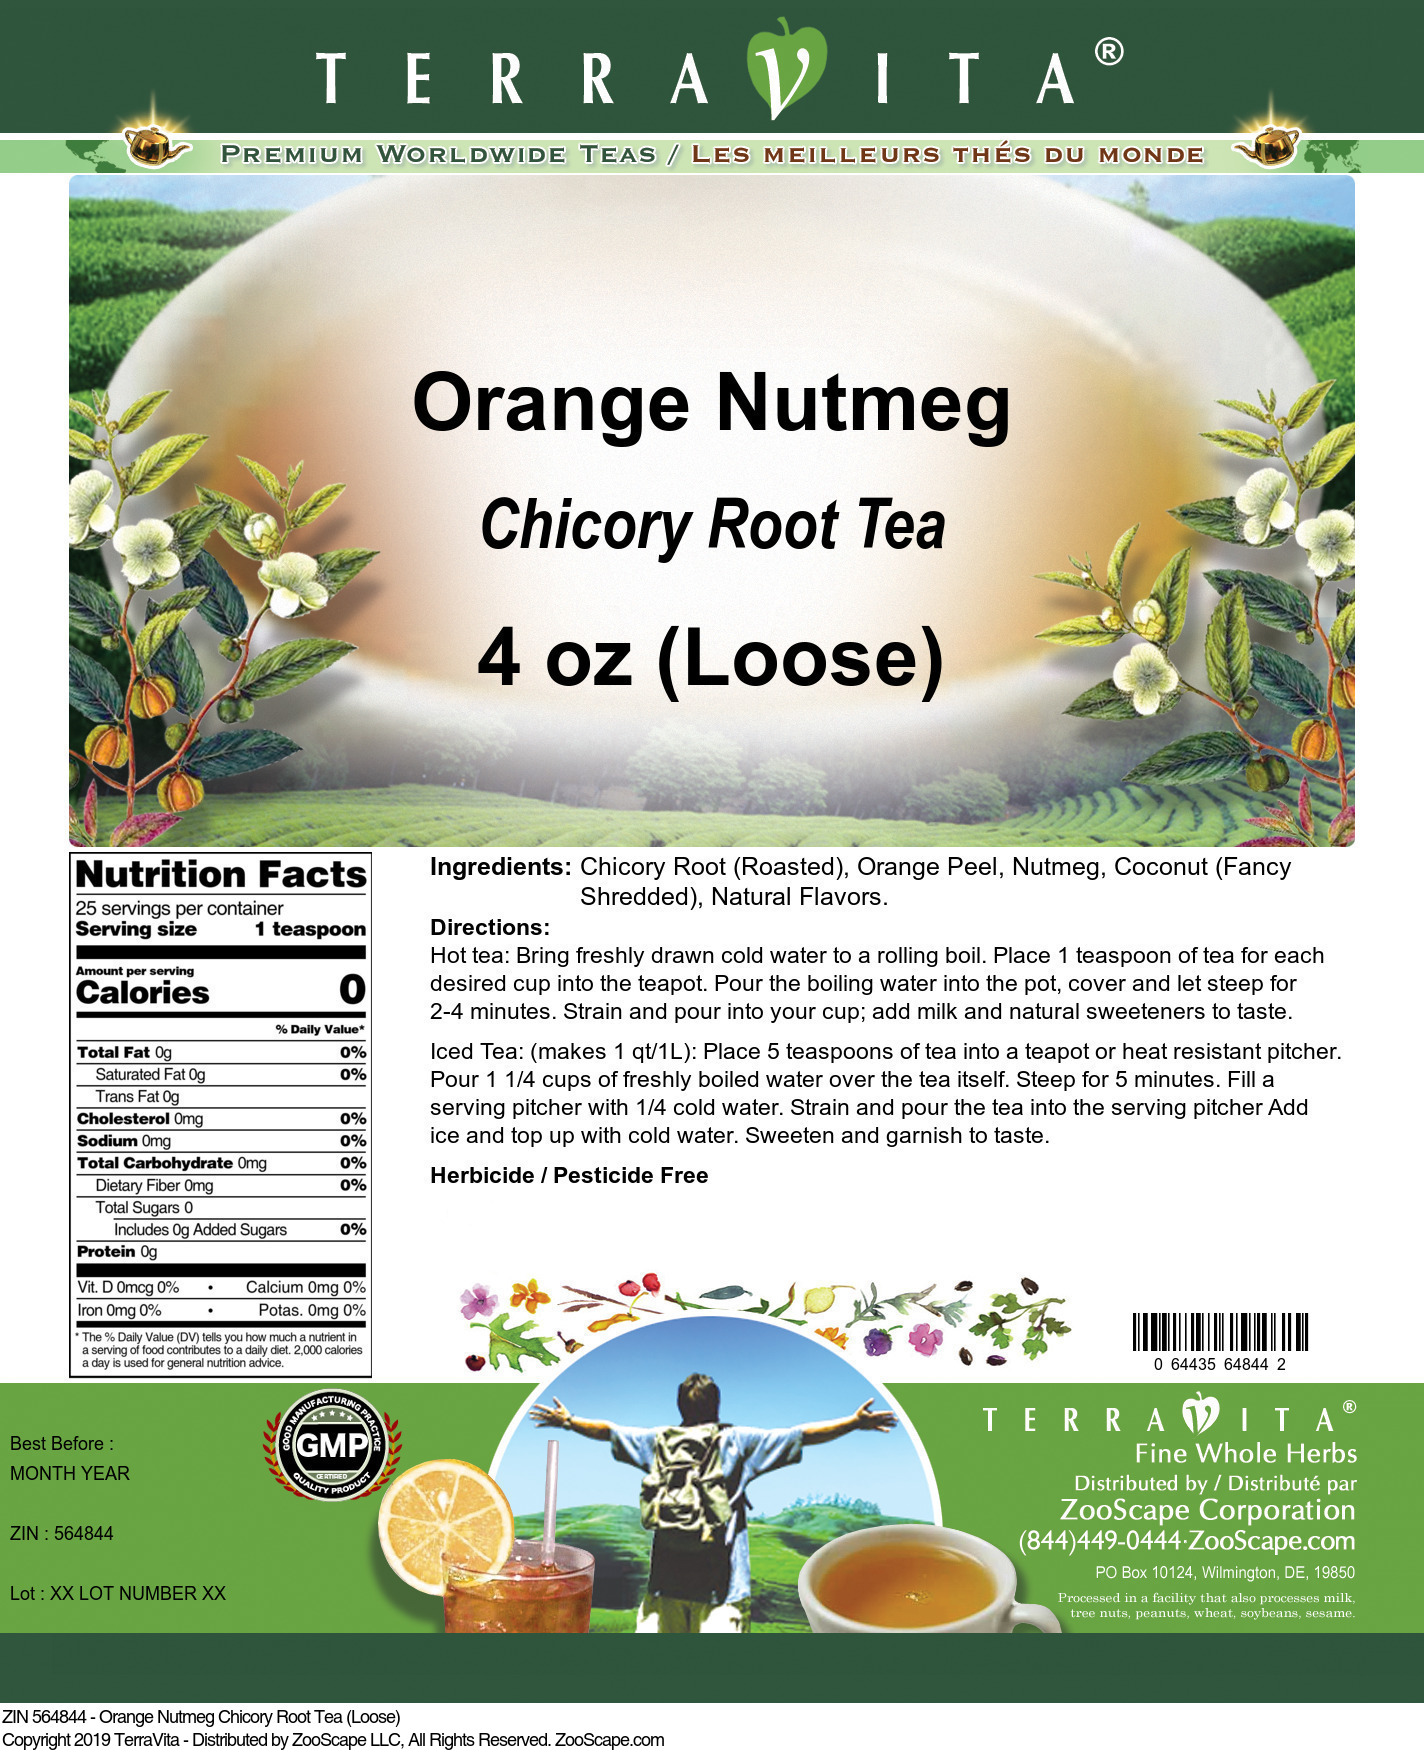 Orange Nutmeg Chicory Root Tea (Loose) - Label